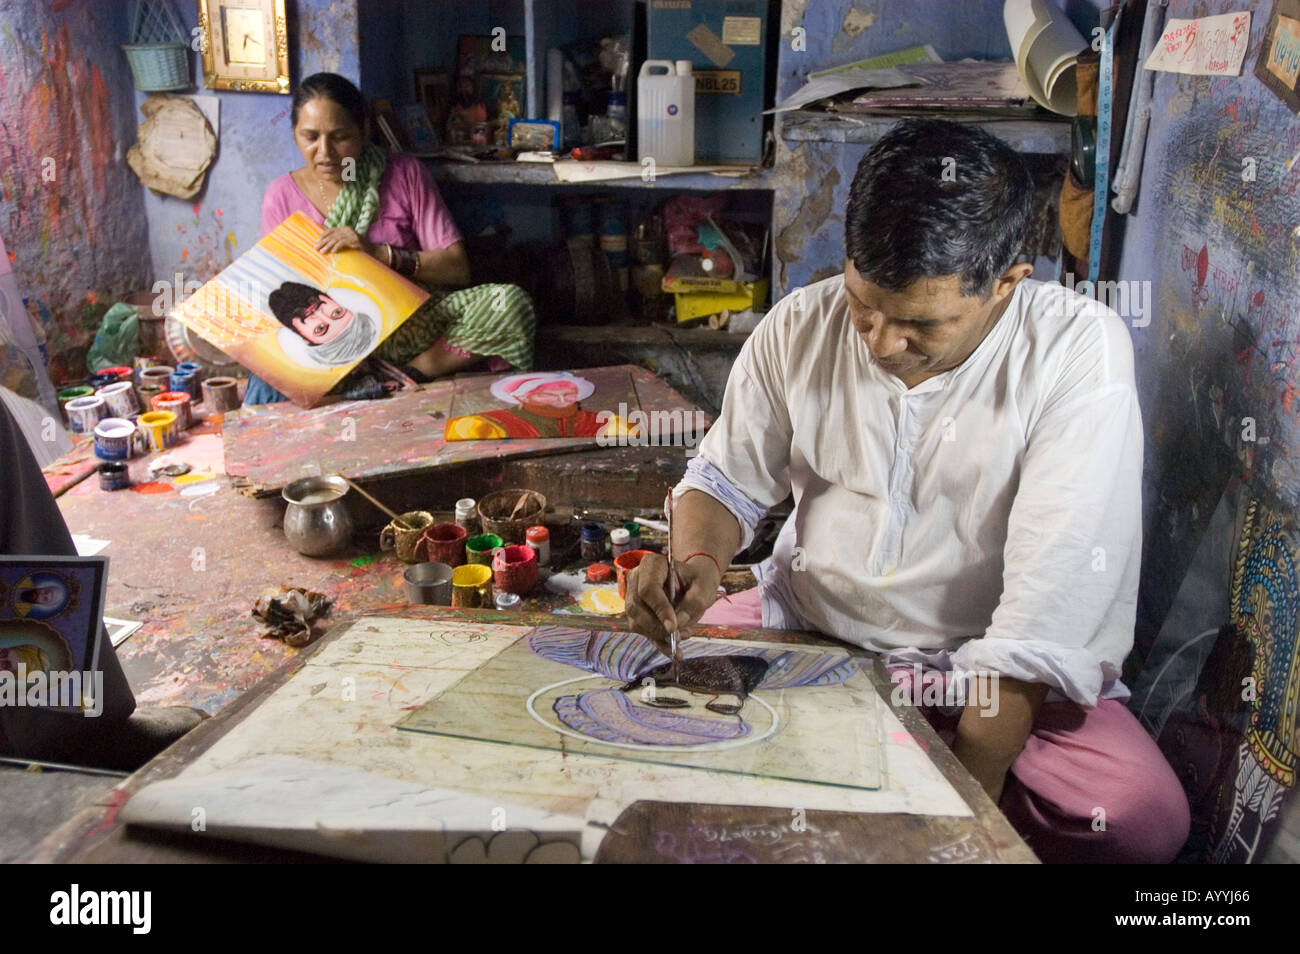 Atelier d'hommes et femmes religieux indiens peintres New Delhi Inde Banque D'Images